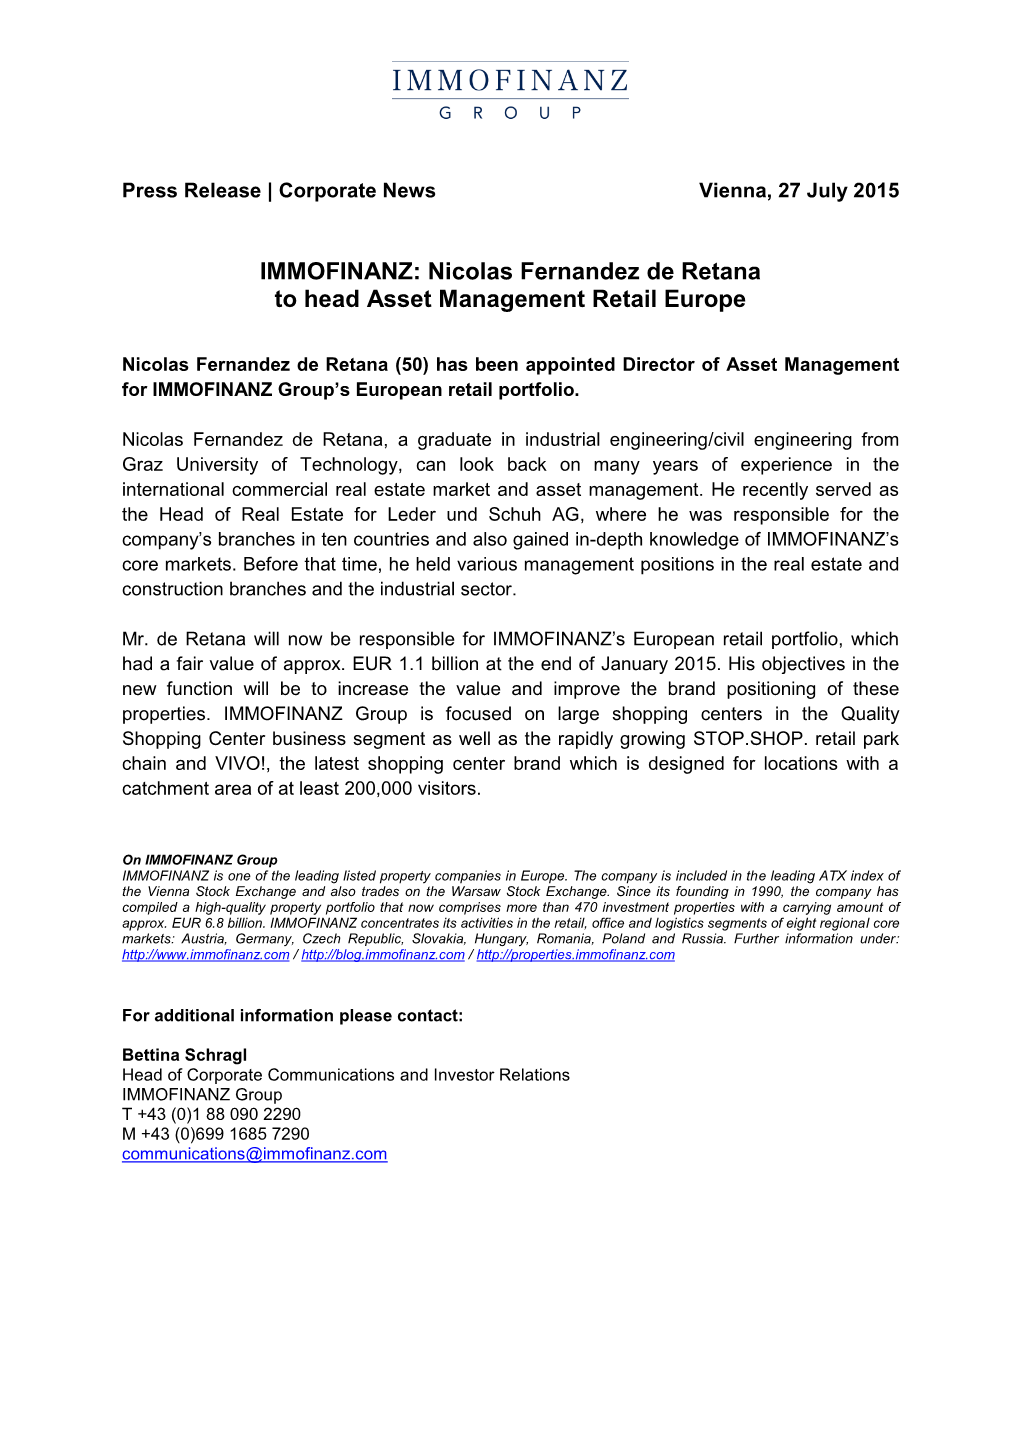 Nicolas Fernandez De Retana to Head Asset Management Retail Europe